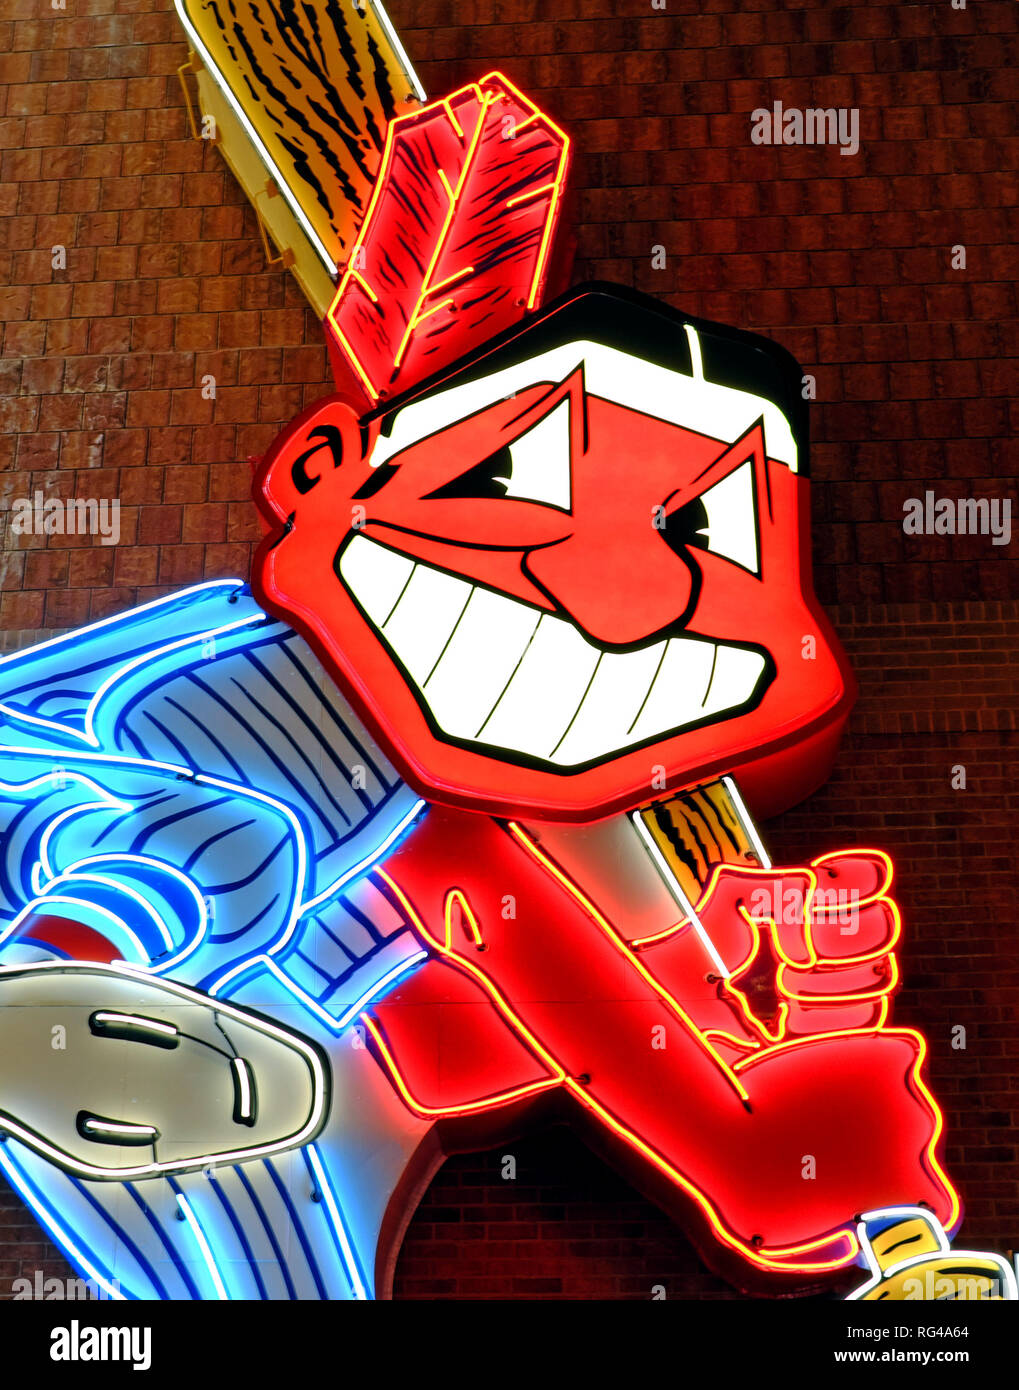 Cleveland Indians Chief Wahoo logo segno al neon, la vecchia mascotte del Cleveland Ohio squadra di baseball. Foto Stock